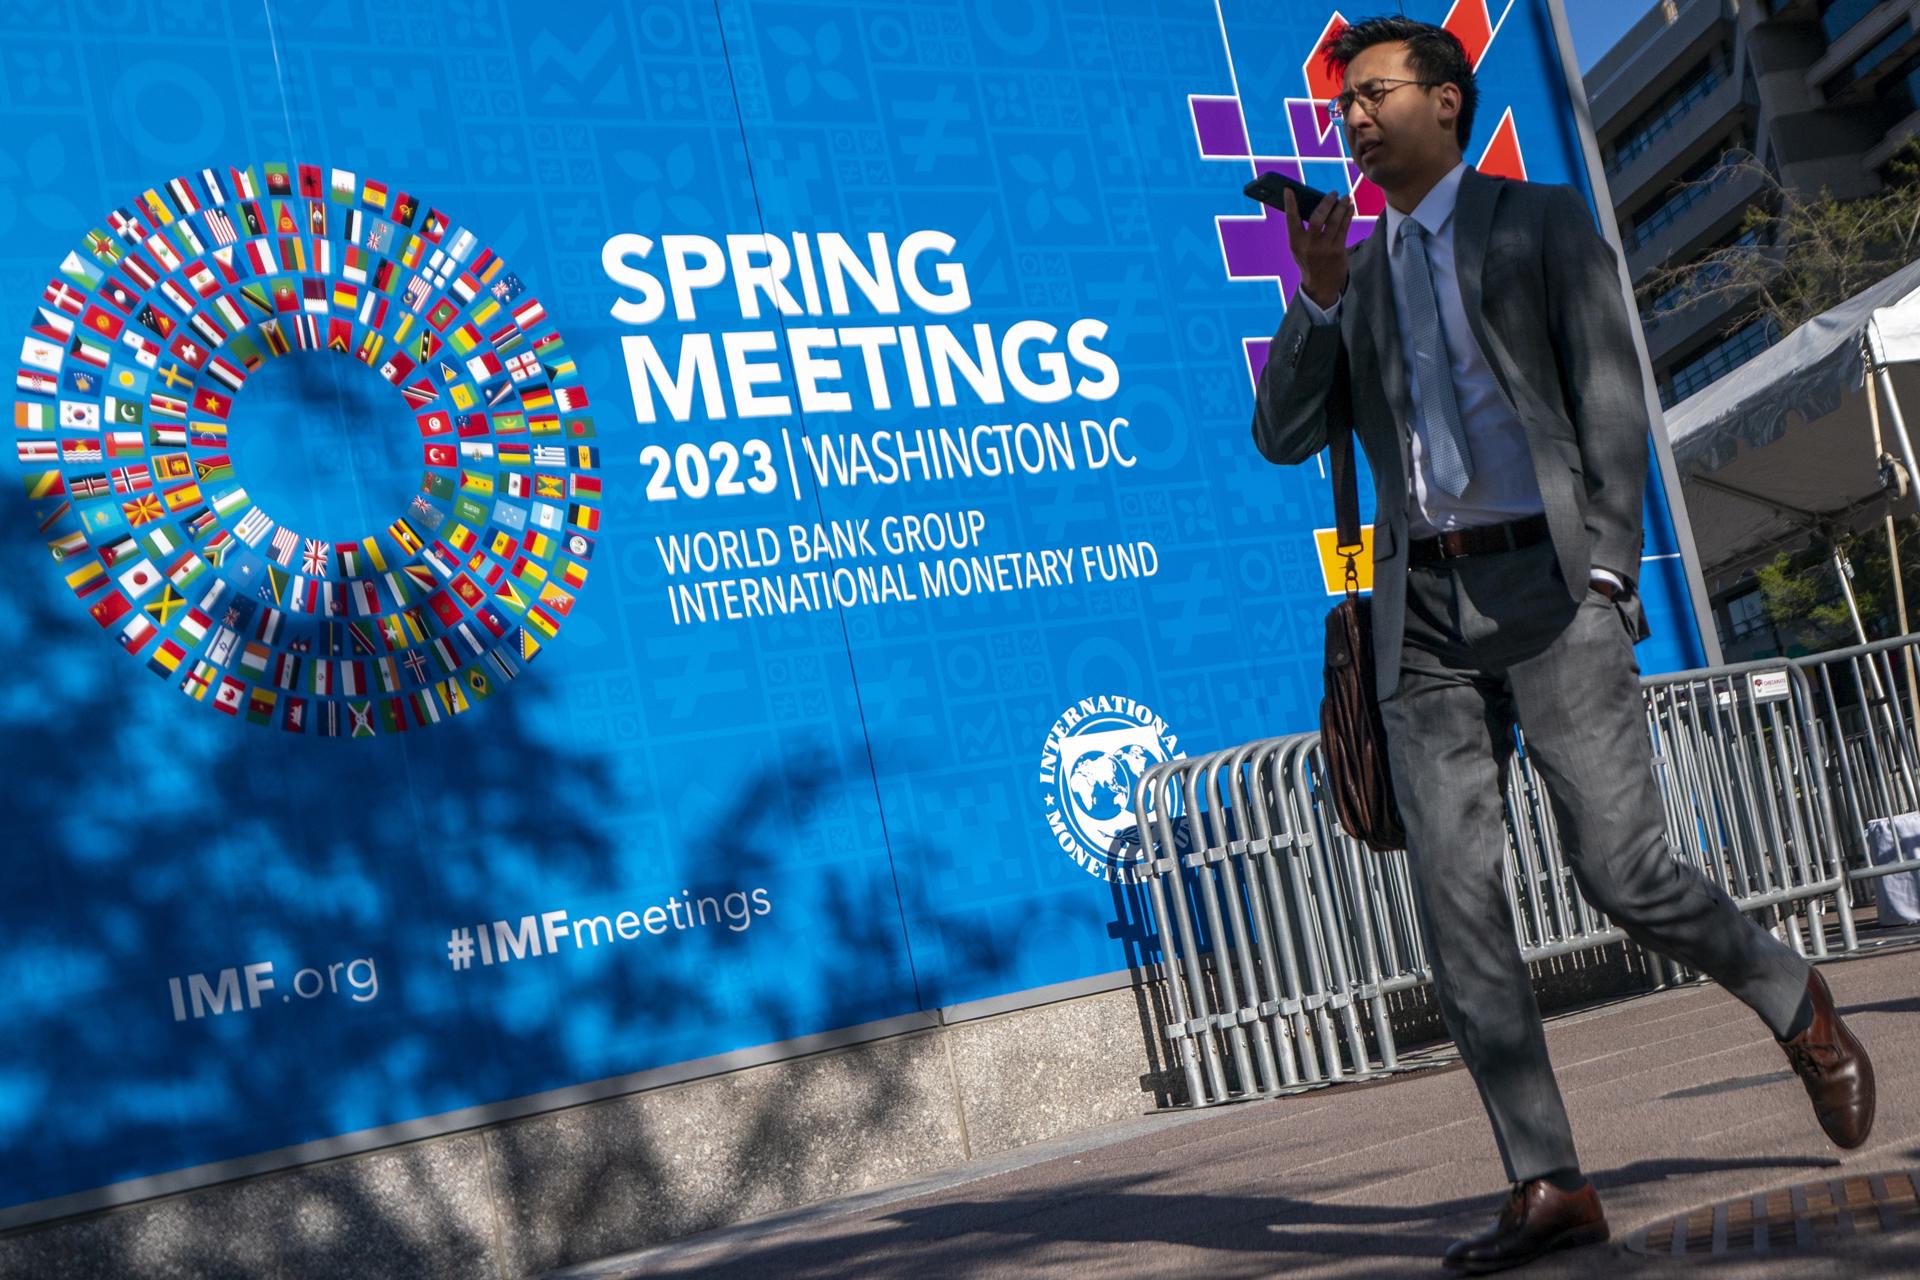 Vista del edificio del Fondo Monetario Internacional (FMI) durante las reuniones de primavera del FMI y del Banco Mundial, en Washington (EE.UU.), este 10 de abril de 2023. EFE/EPA/Shawn Thew